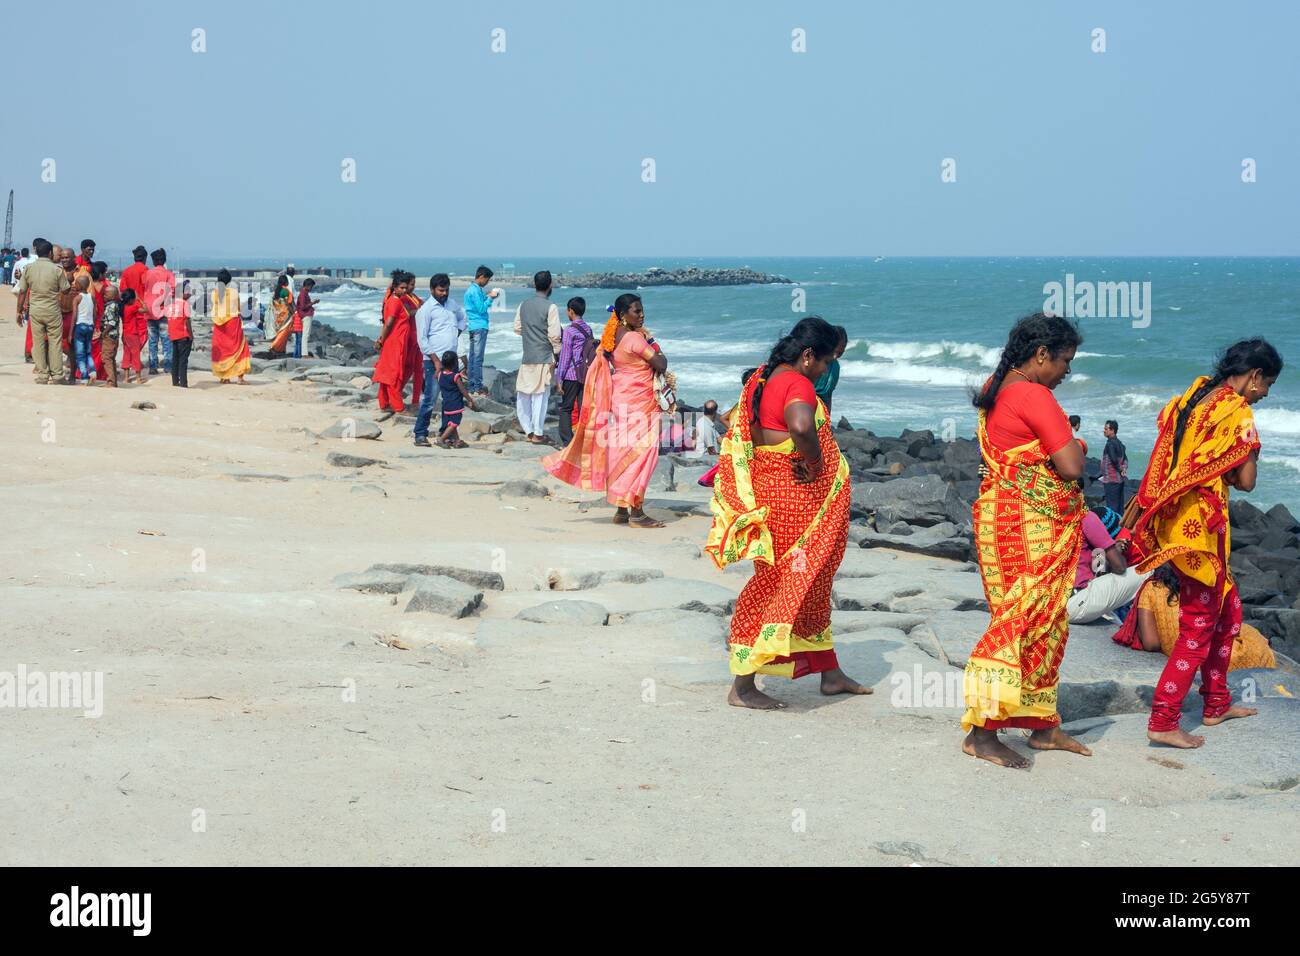 Femmine indiane che indossano sari colorati rossi e gialli godendo del tempo vicino al mare, Puducherry (Pondicherry), Tamil Nadu, India Foto Stock